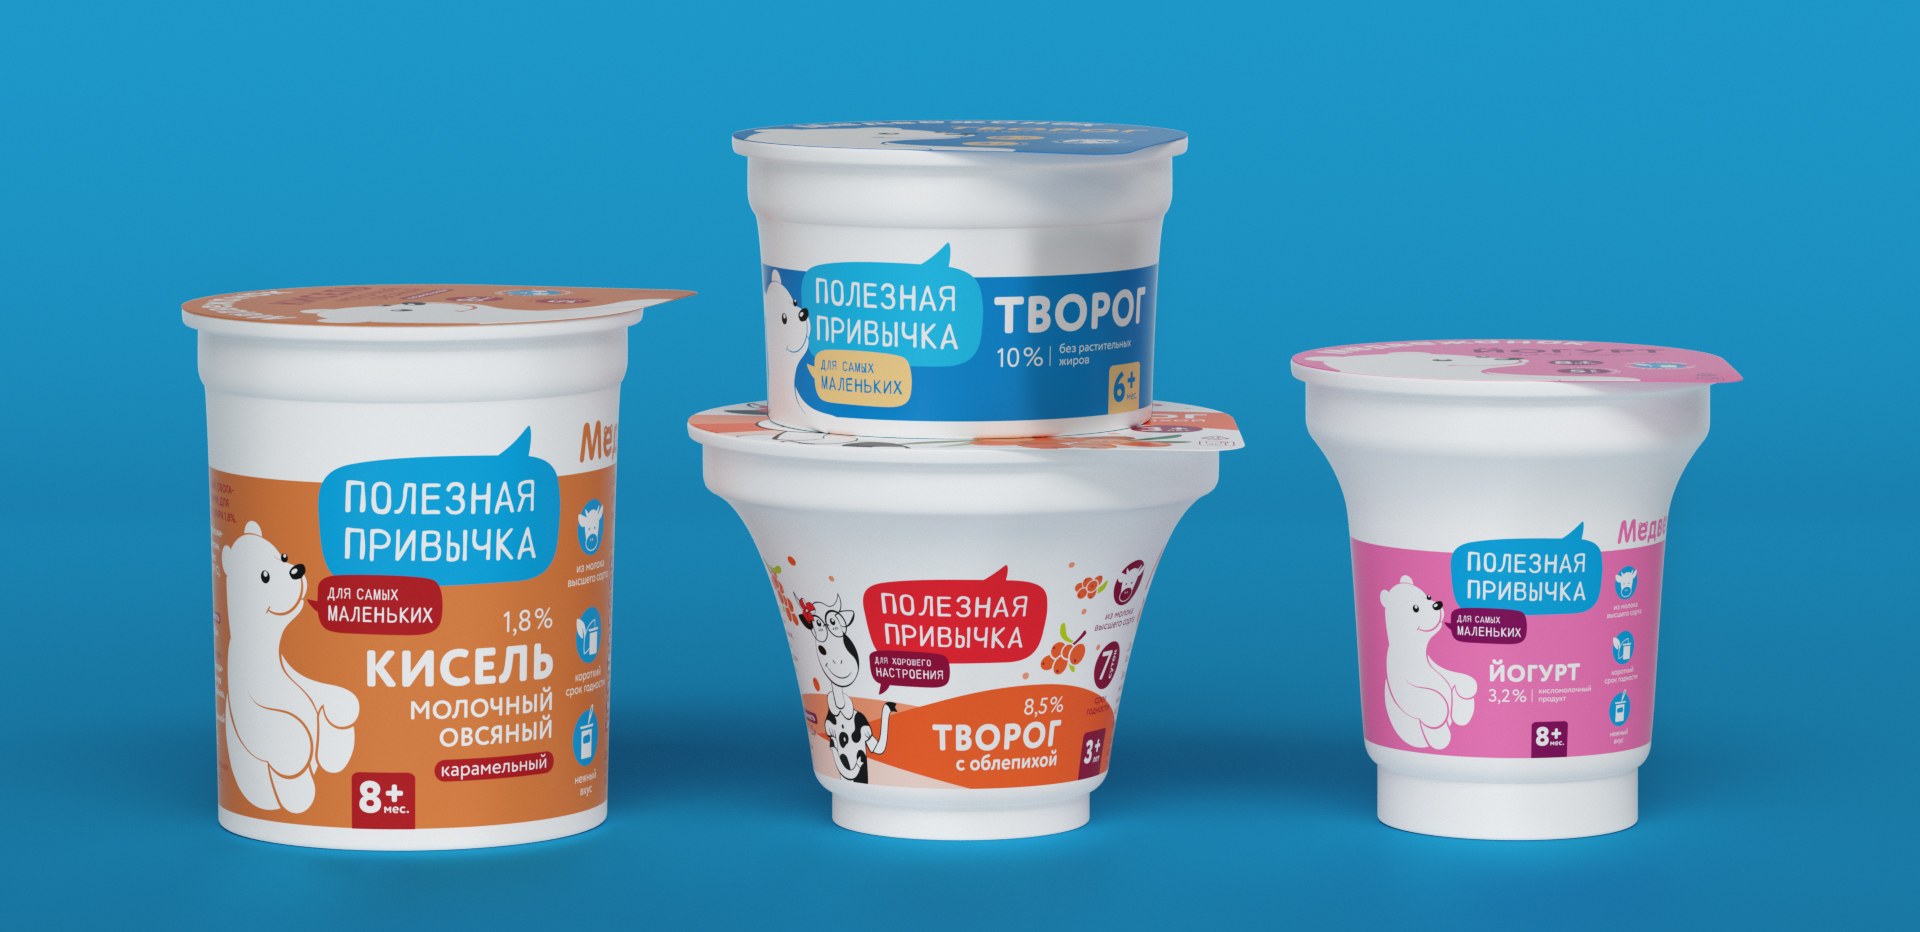 Дизайн упаковки йогуртов бренда ЦПС 